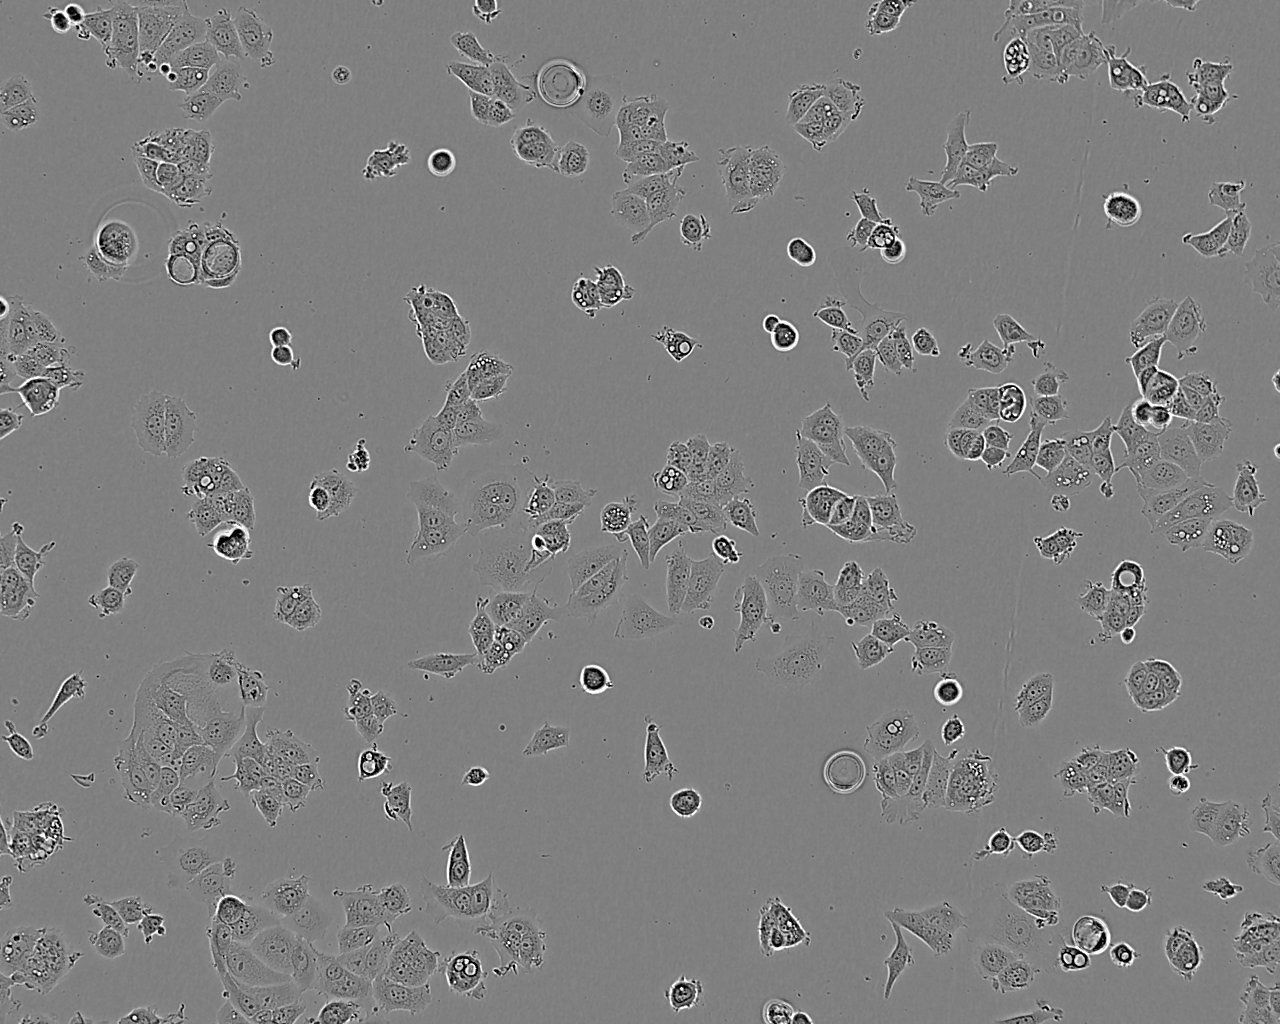 SW1222 epithelioid cells人结肠癌细胞系,SW1222 epithelioid cells